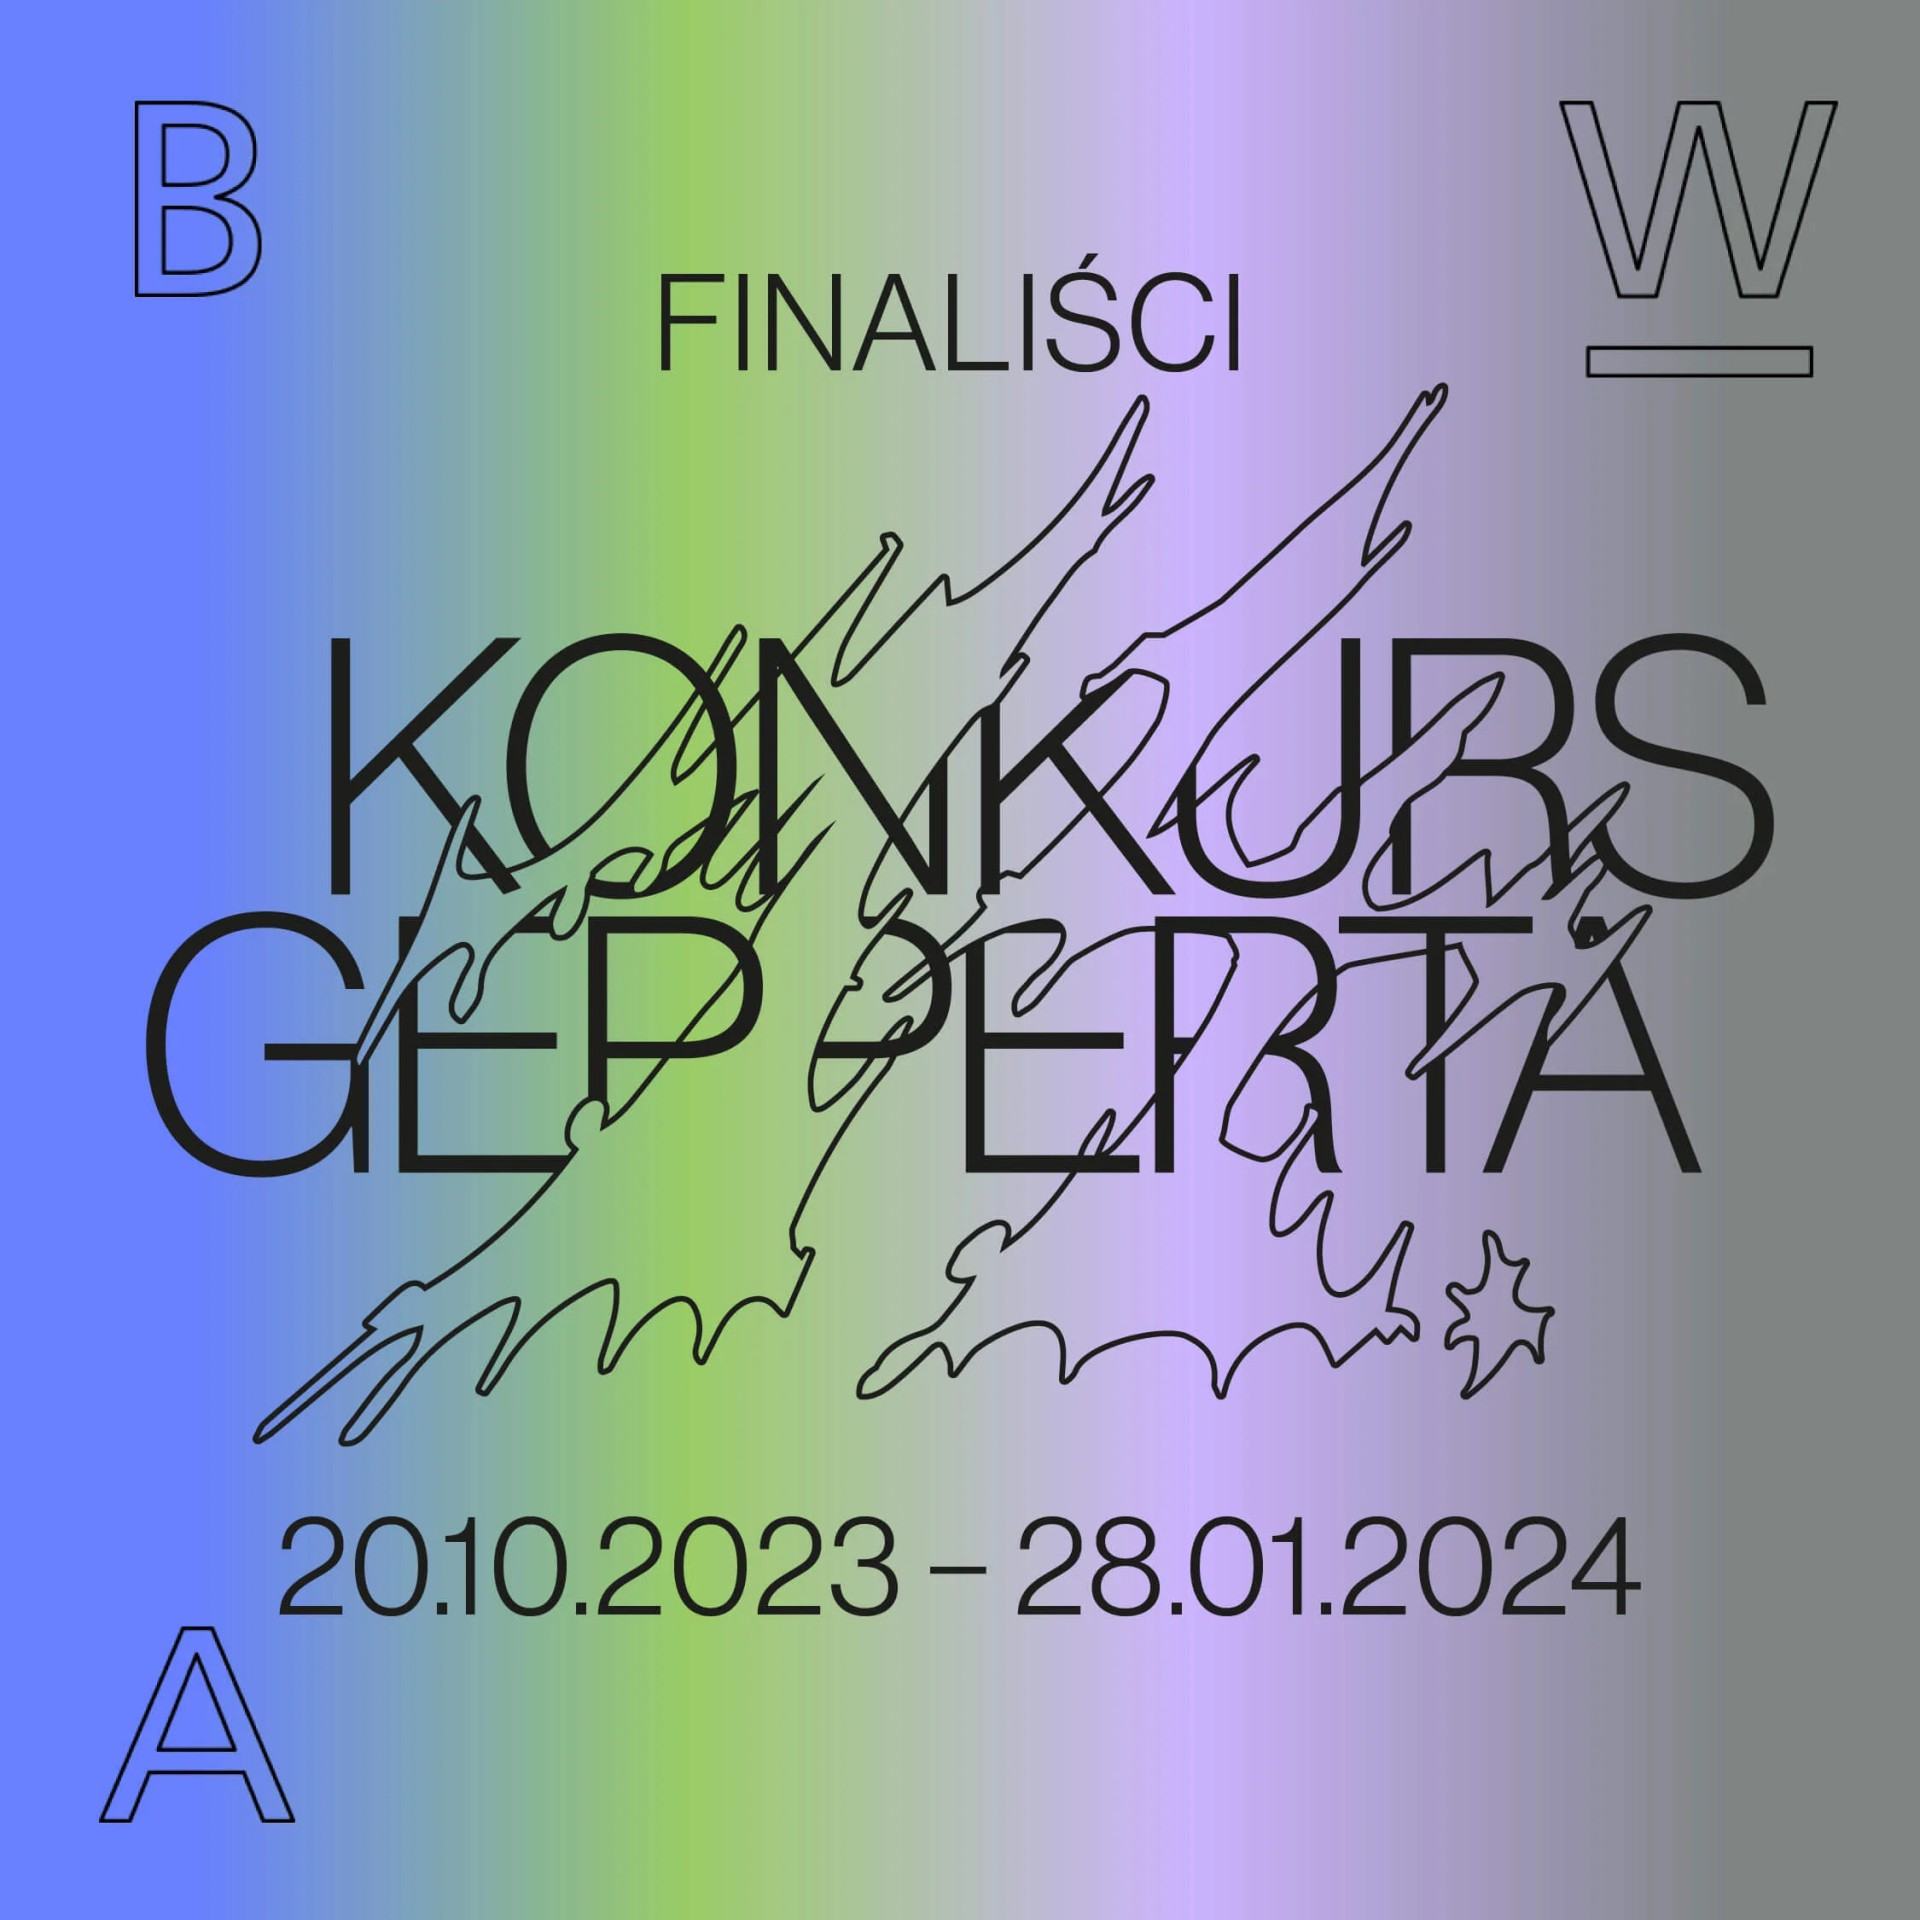 Wystawa finalistów 14. Konkursu Gepperta